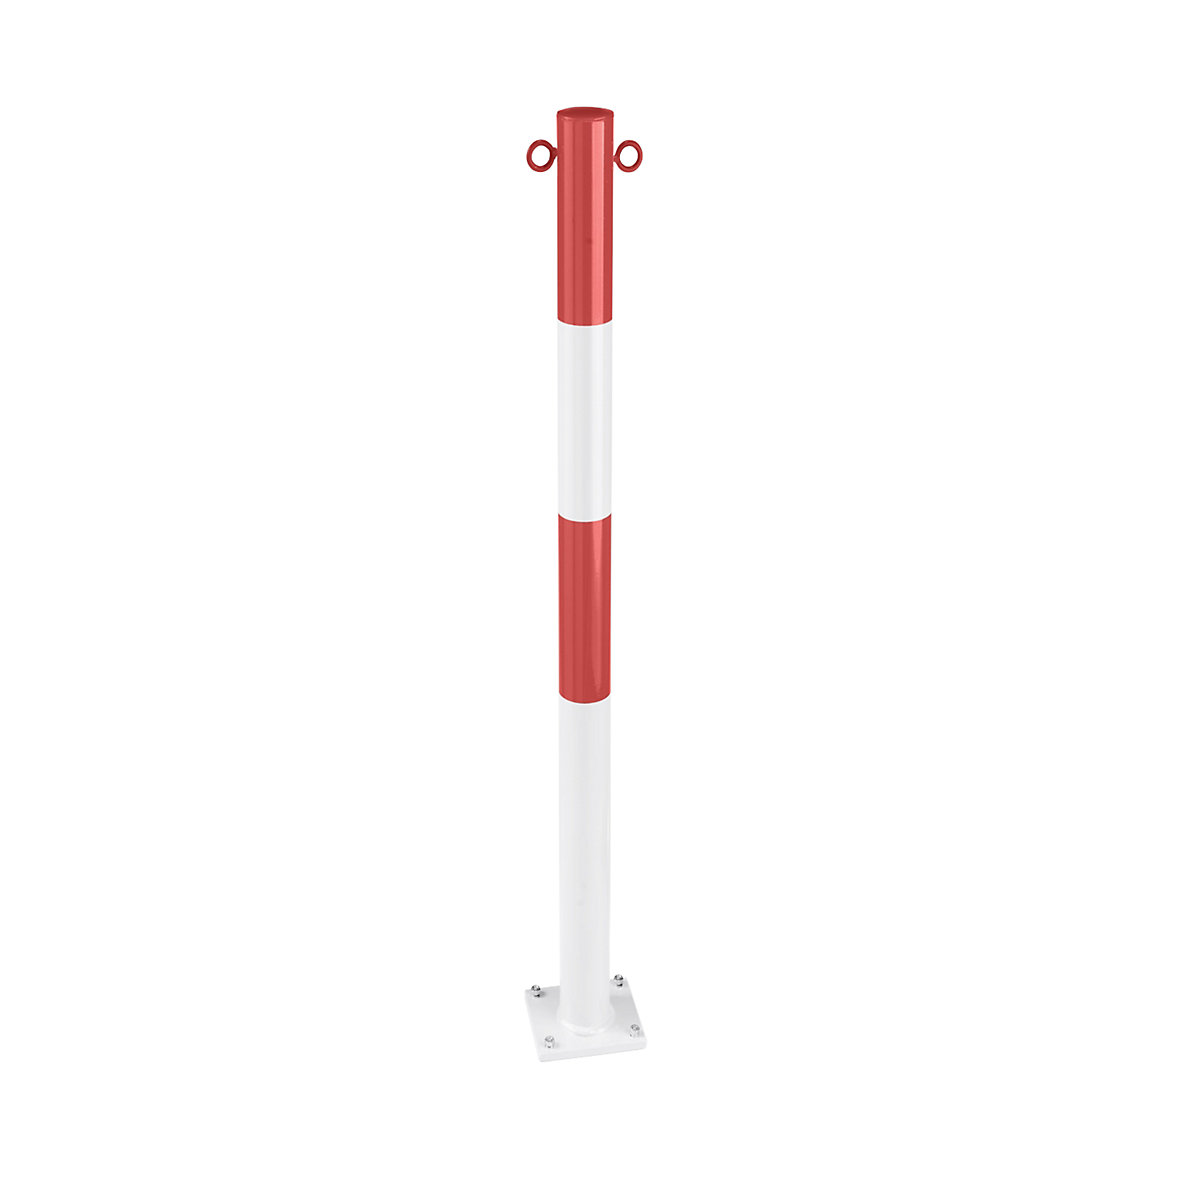 Poste barrera de tubo de acero, para atornillar, Ø 60 mm, rojo / blanco, galvanizado y pintado-2